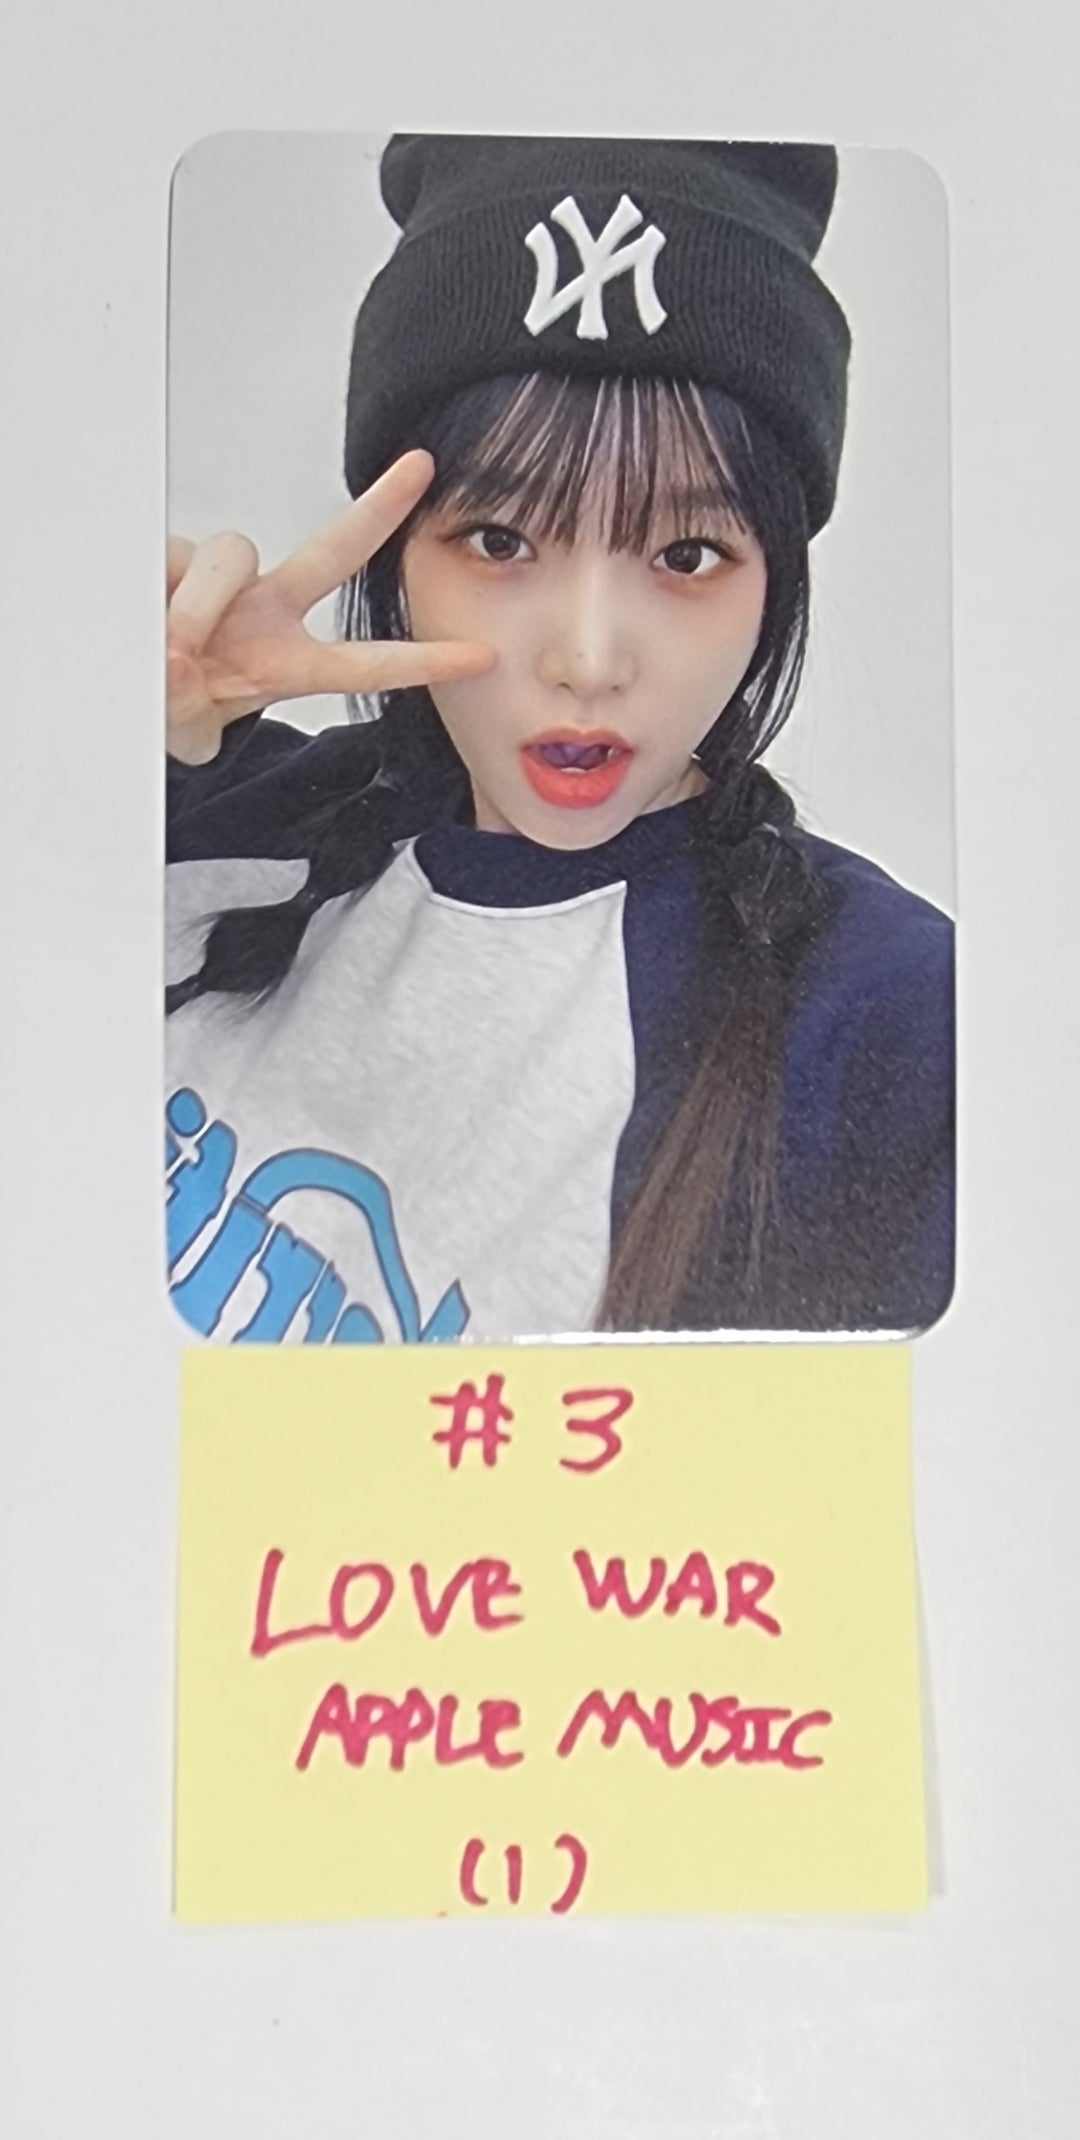 YENA "Love War" - Apple Music Fansign Event Photocard Round 6